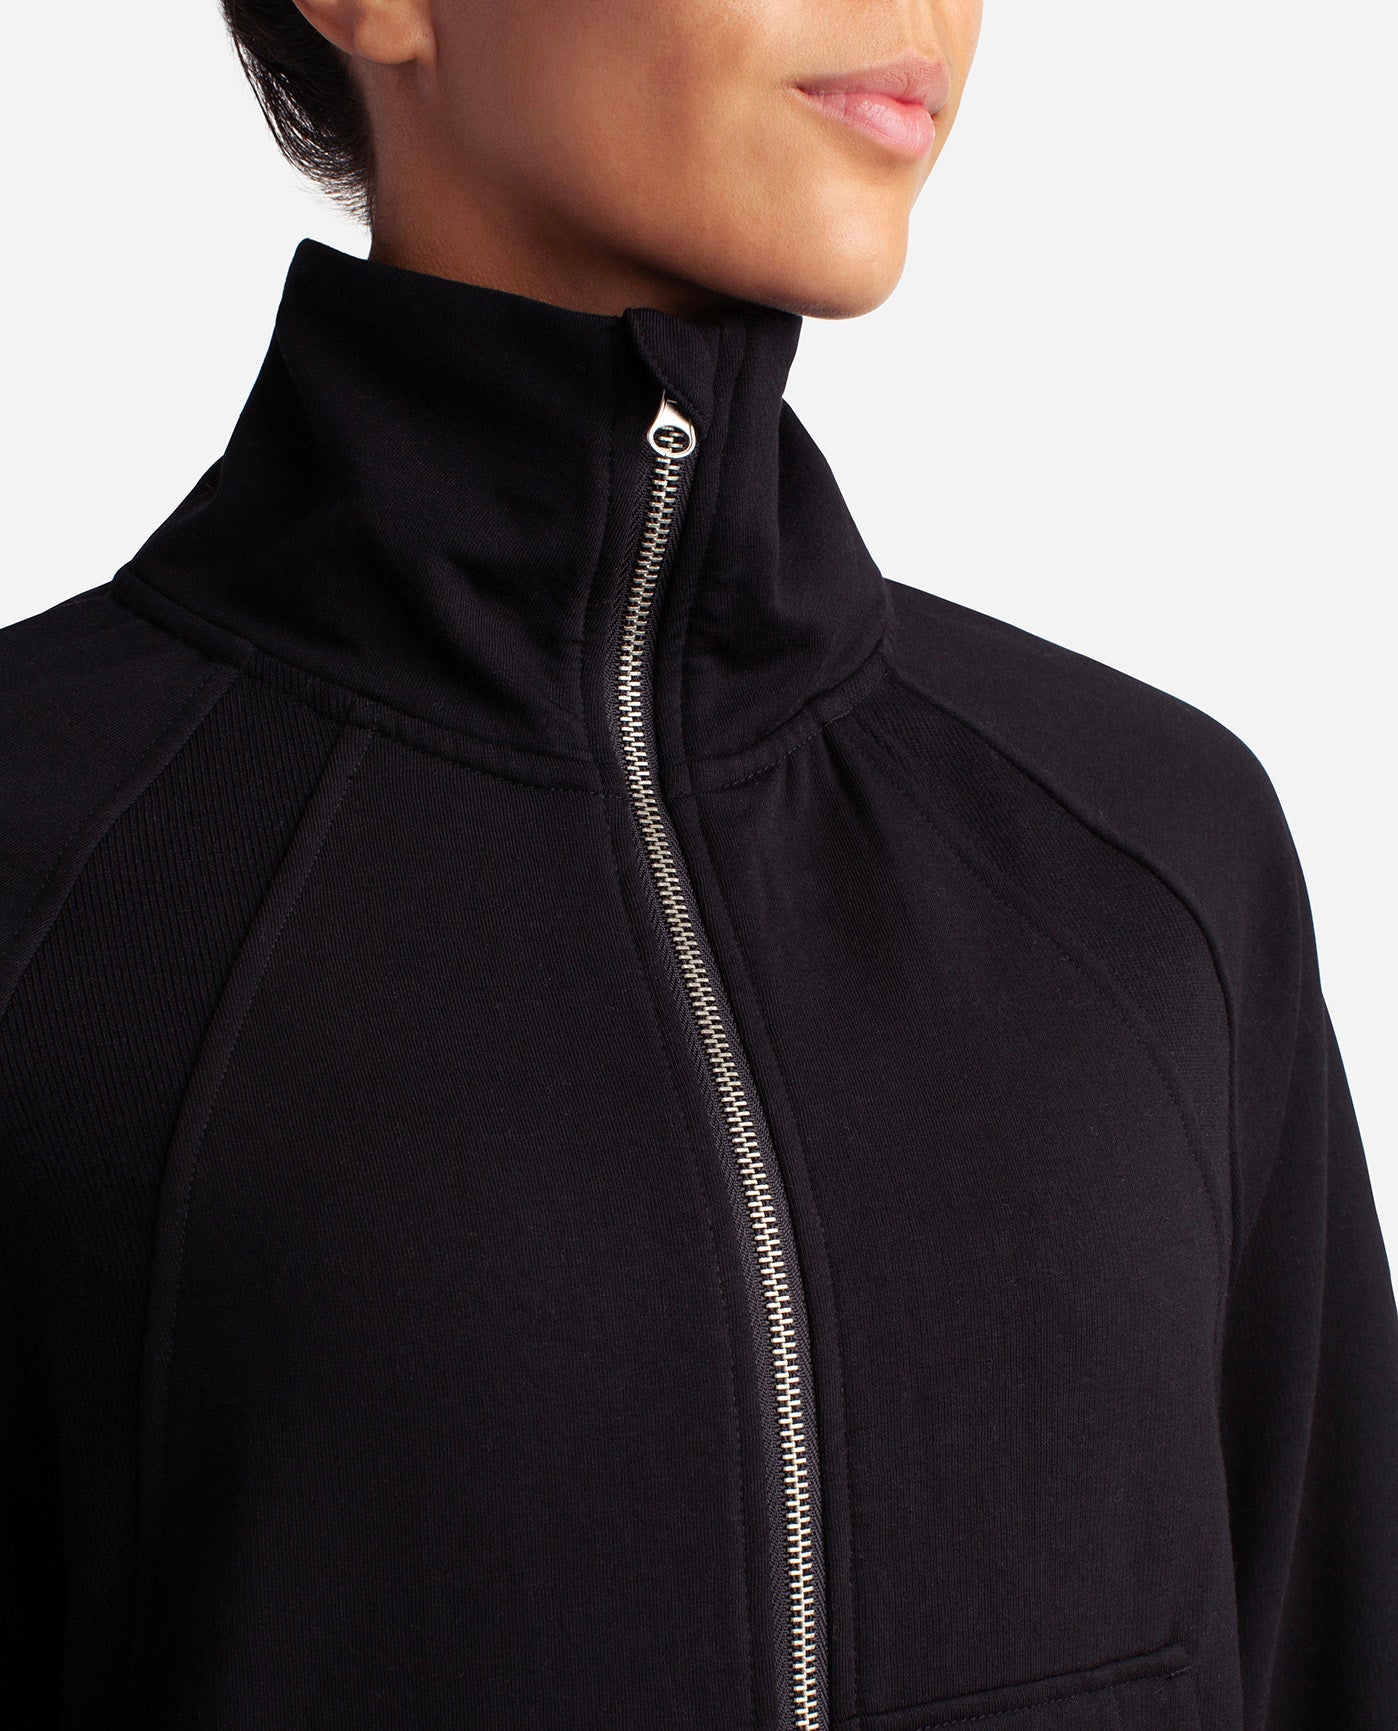 Danskin Now fleece zip up jacket black! Women's size large! Like new!